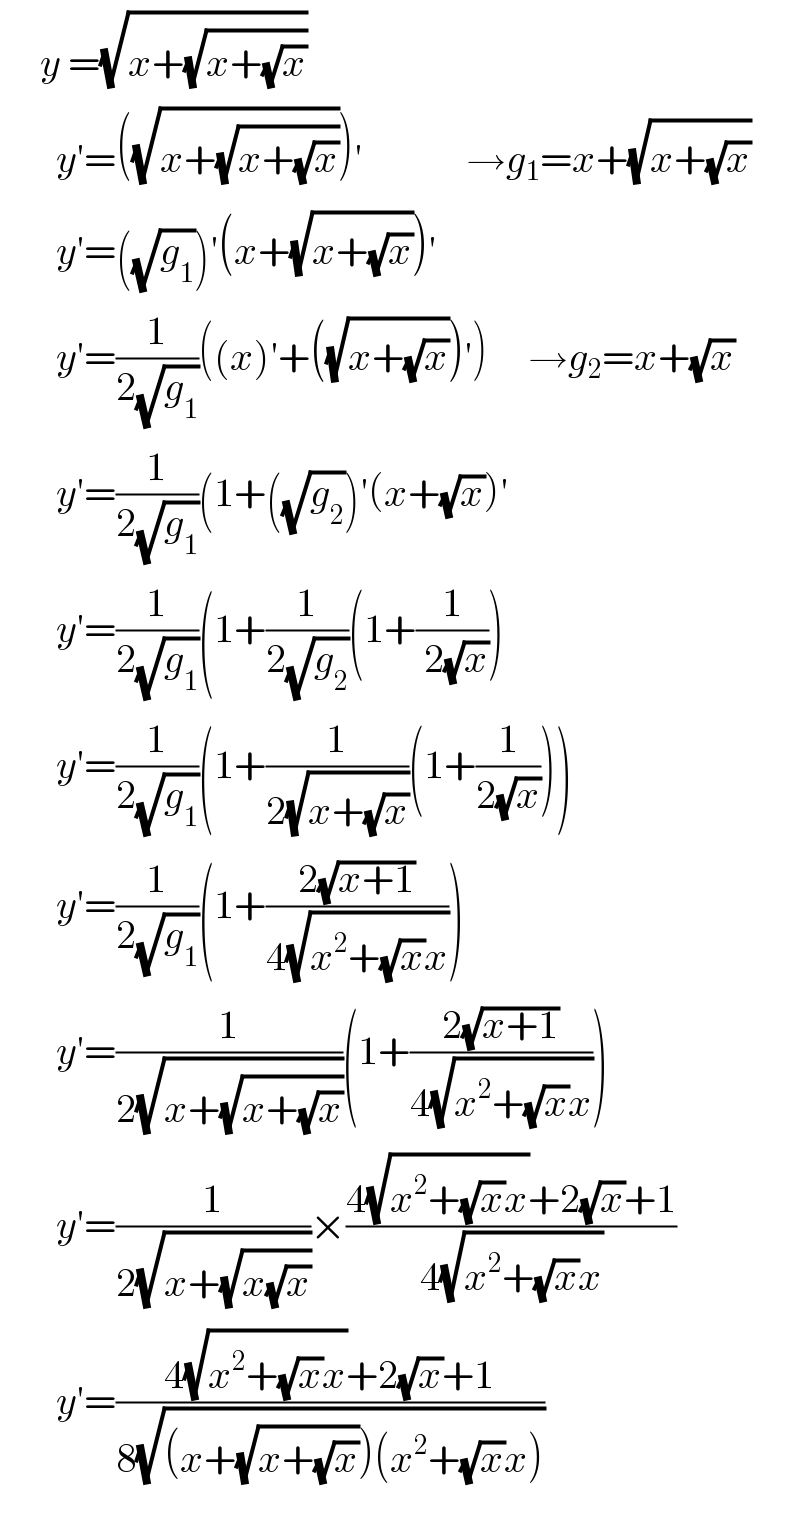      y =(√(x+(√(x+(√x)))))         y′=((√(x+(√(x+(√x))))))′             →g_1 =x+(√(x+(√x)))         y′=((√g_1 ))′(x+(√(x+(√x))))′         y′=(1/(2(√g_1 )))((x)′+((√(x+(√x))))′)     →g_2 =x+(√x)         y′=(1/(2(√g_1 )))(1+((√g_2 ))′(x+(√x))′         y′=(1/(2(√g_1 )))(1+(1/(2(√g_2 )))(1+(1/( 2(√x))))         y′=(1/(2(√g_1 )))(1+(1/(2(√(x+(√x)))))(1+(1/(2(√x)))))         y′=(1/(2(√g_1 )))(1+((2(√(x+1)))/(4(√(x^2 +(√x)x)))))         y′=(1/(2(√(x+(√(x+(√x)))))))(1+((2(√(x+1)))/(4(√(x^2 +(√x)x)))))         y′=(1/(2(√(x+(√(x(√x)))))))×((4(√(x^2 +(√x)x))+2(√x)+1)/(4(√(x^2 +(√x)x))))         y′=((4(√(x^2 +(√x)x))+2(√x)+1)/(8(√((x+(√(x+(√x))))(x^2 +(√x)x)))))  